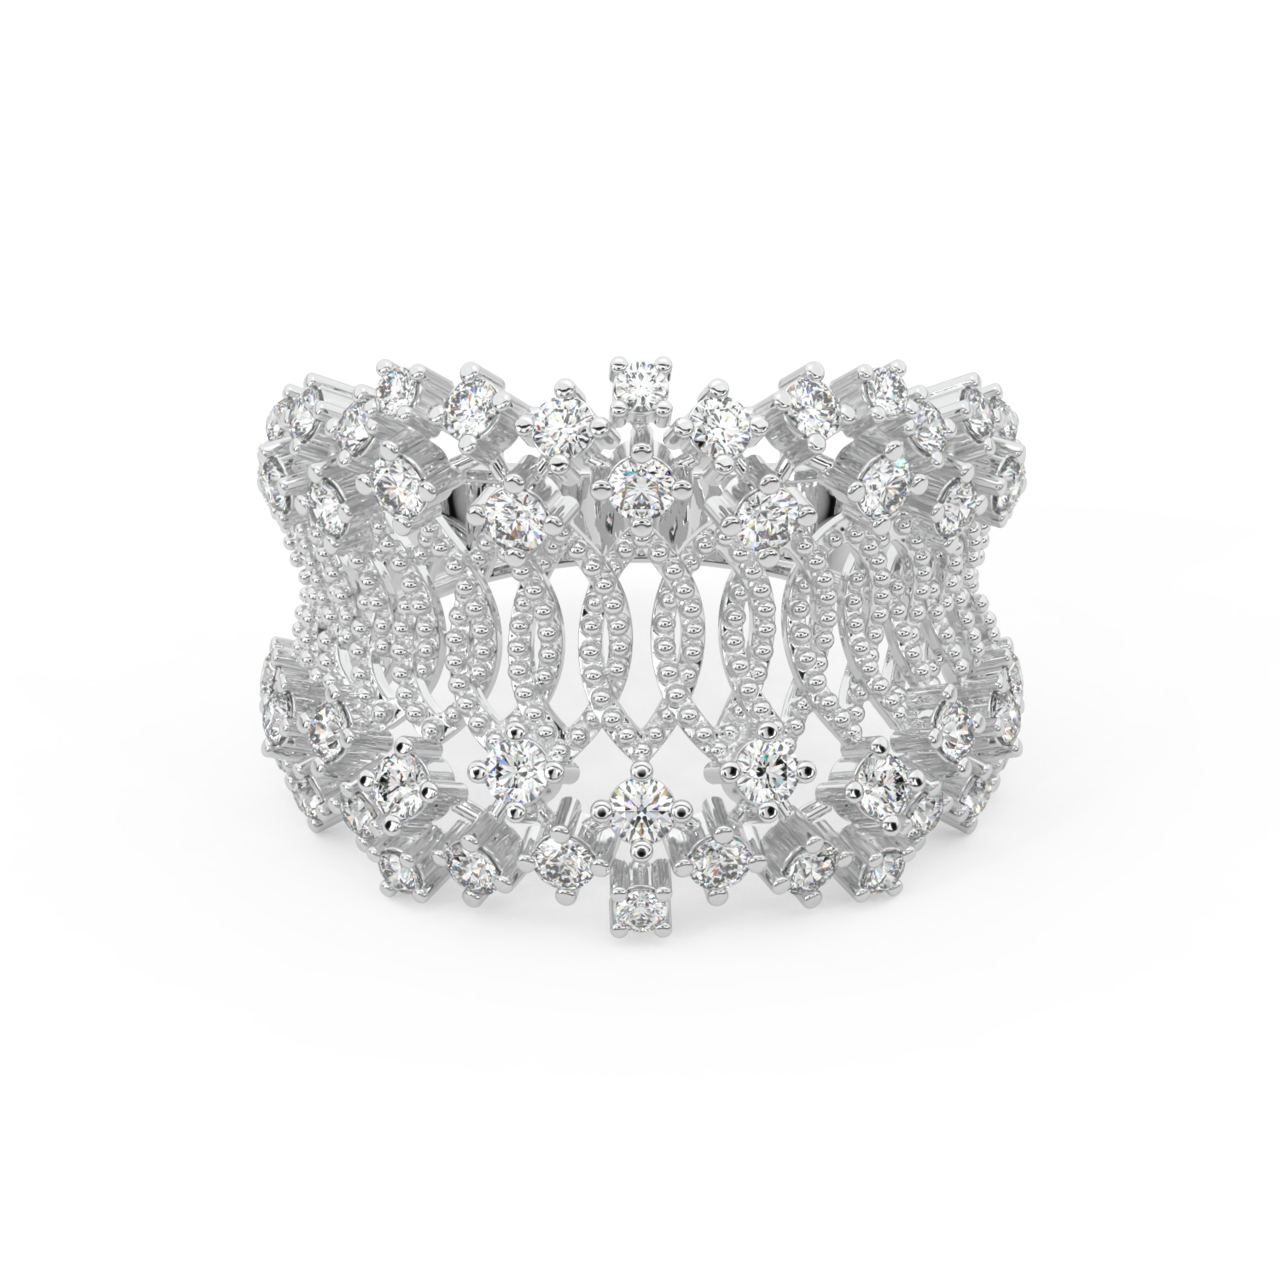 Stylish Border Diamond Engagement Ring